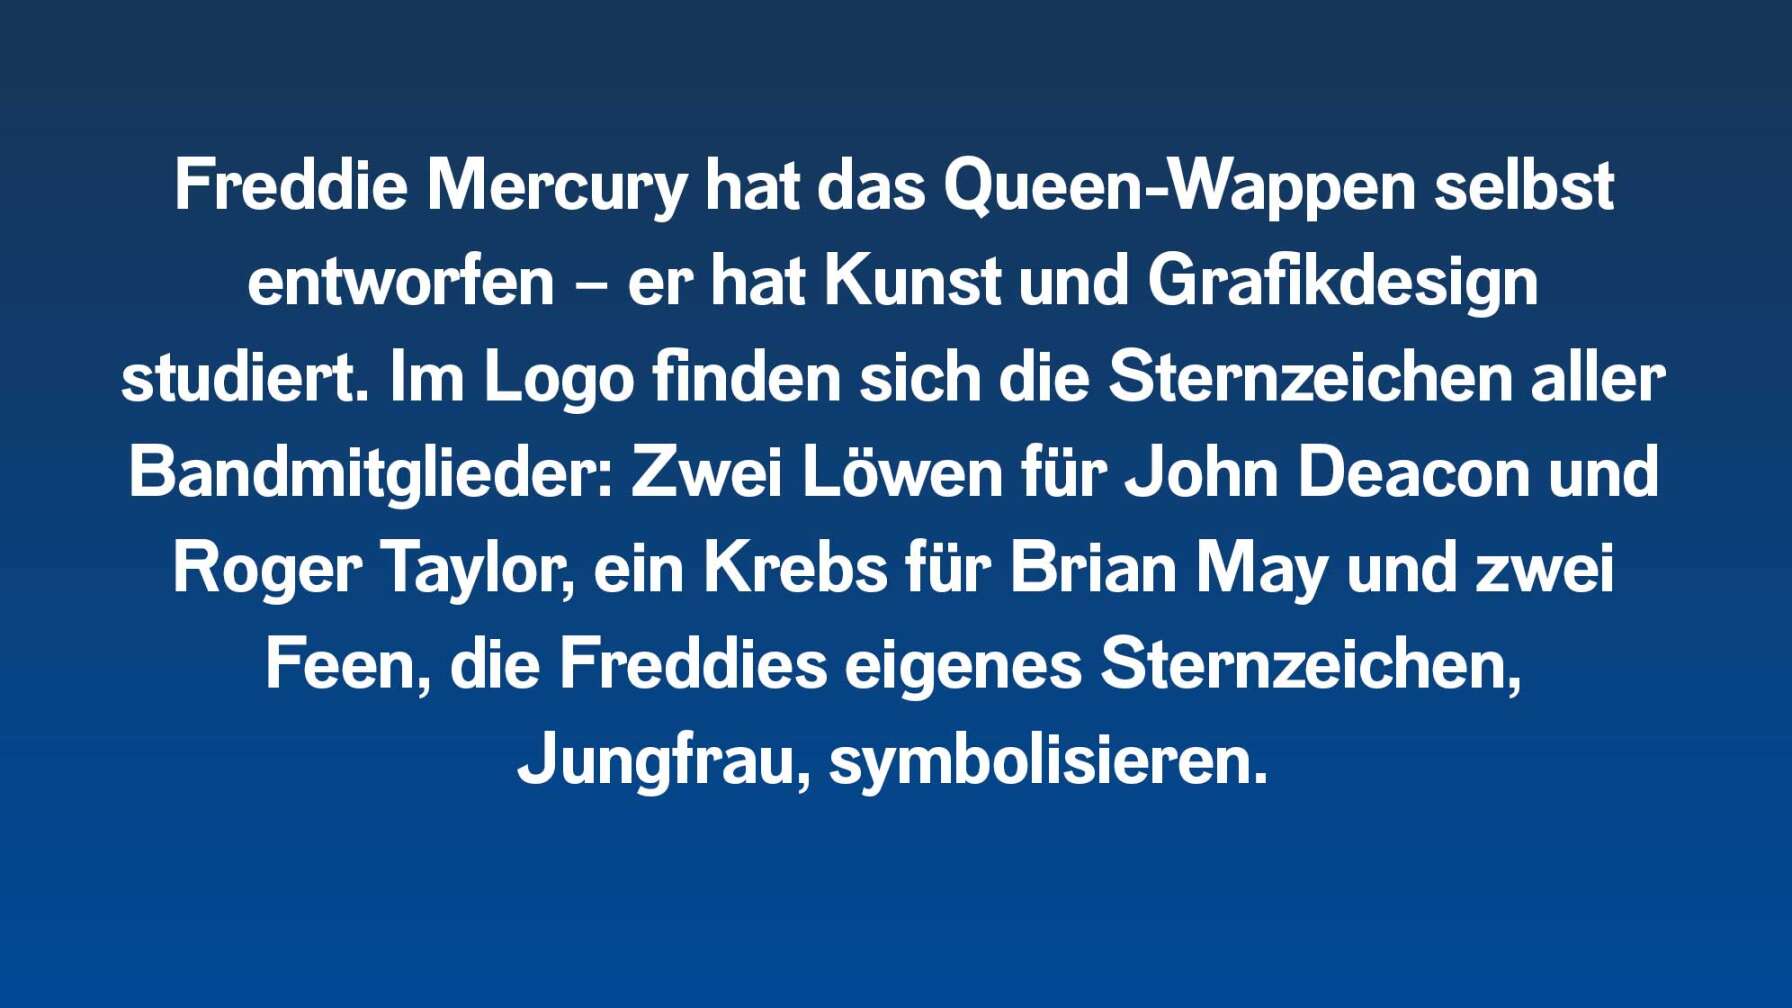 Freddie Mercury hat das Queen-Wappen selbst entworfen – er hat Kunst und Grafikdesign studiert. Im Logo finden sich die Sternzeichen aller Bandmitglieder: Zwei Löwen für John Deacon und Roger Taylor, ein Krebs für Brian May und zwei Feen, die Freddies eigenes Sternzeichen, Jungfrau, symbolisieren.